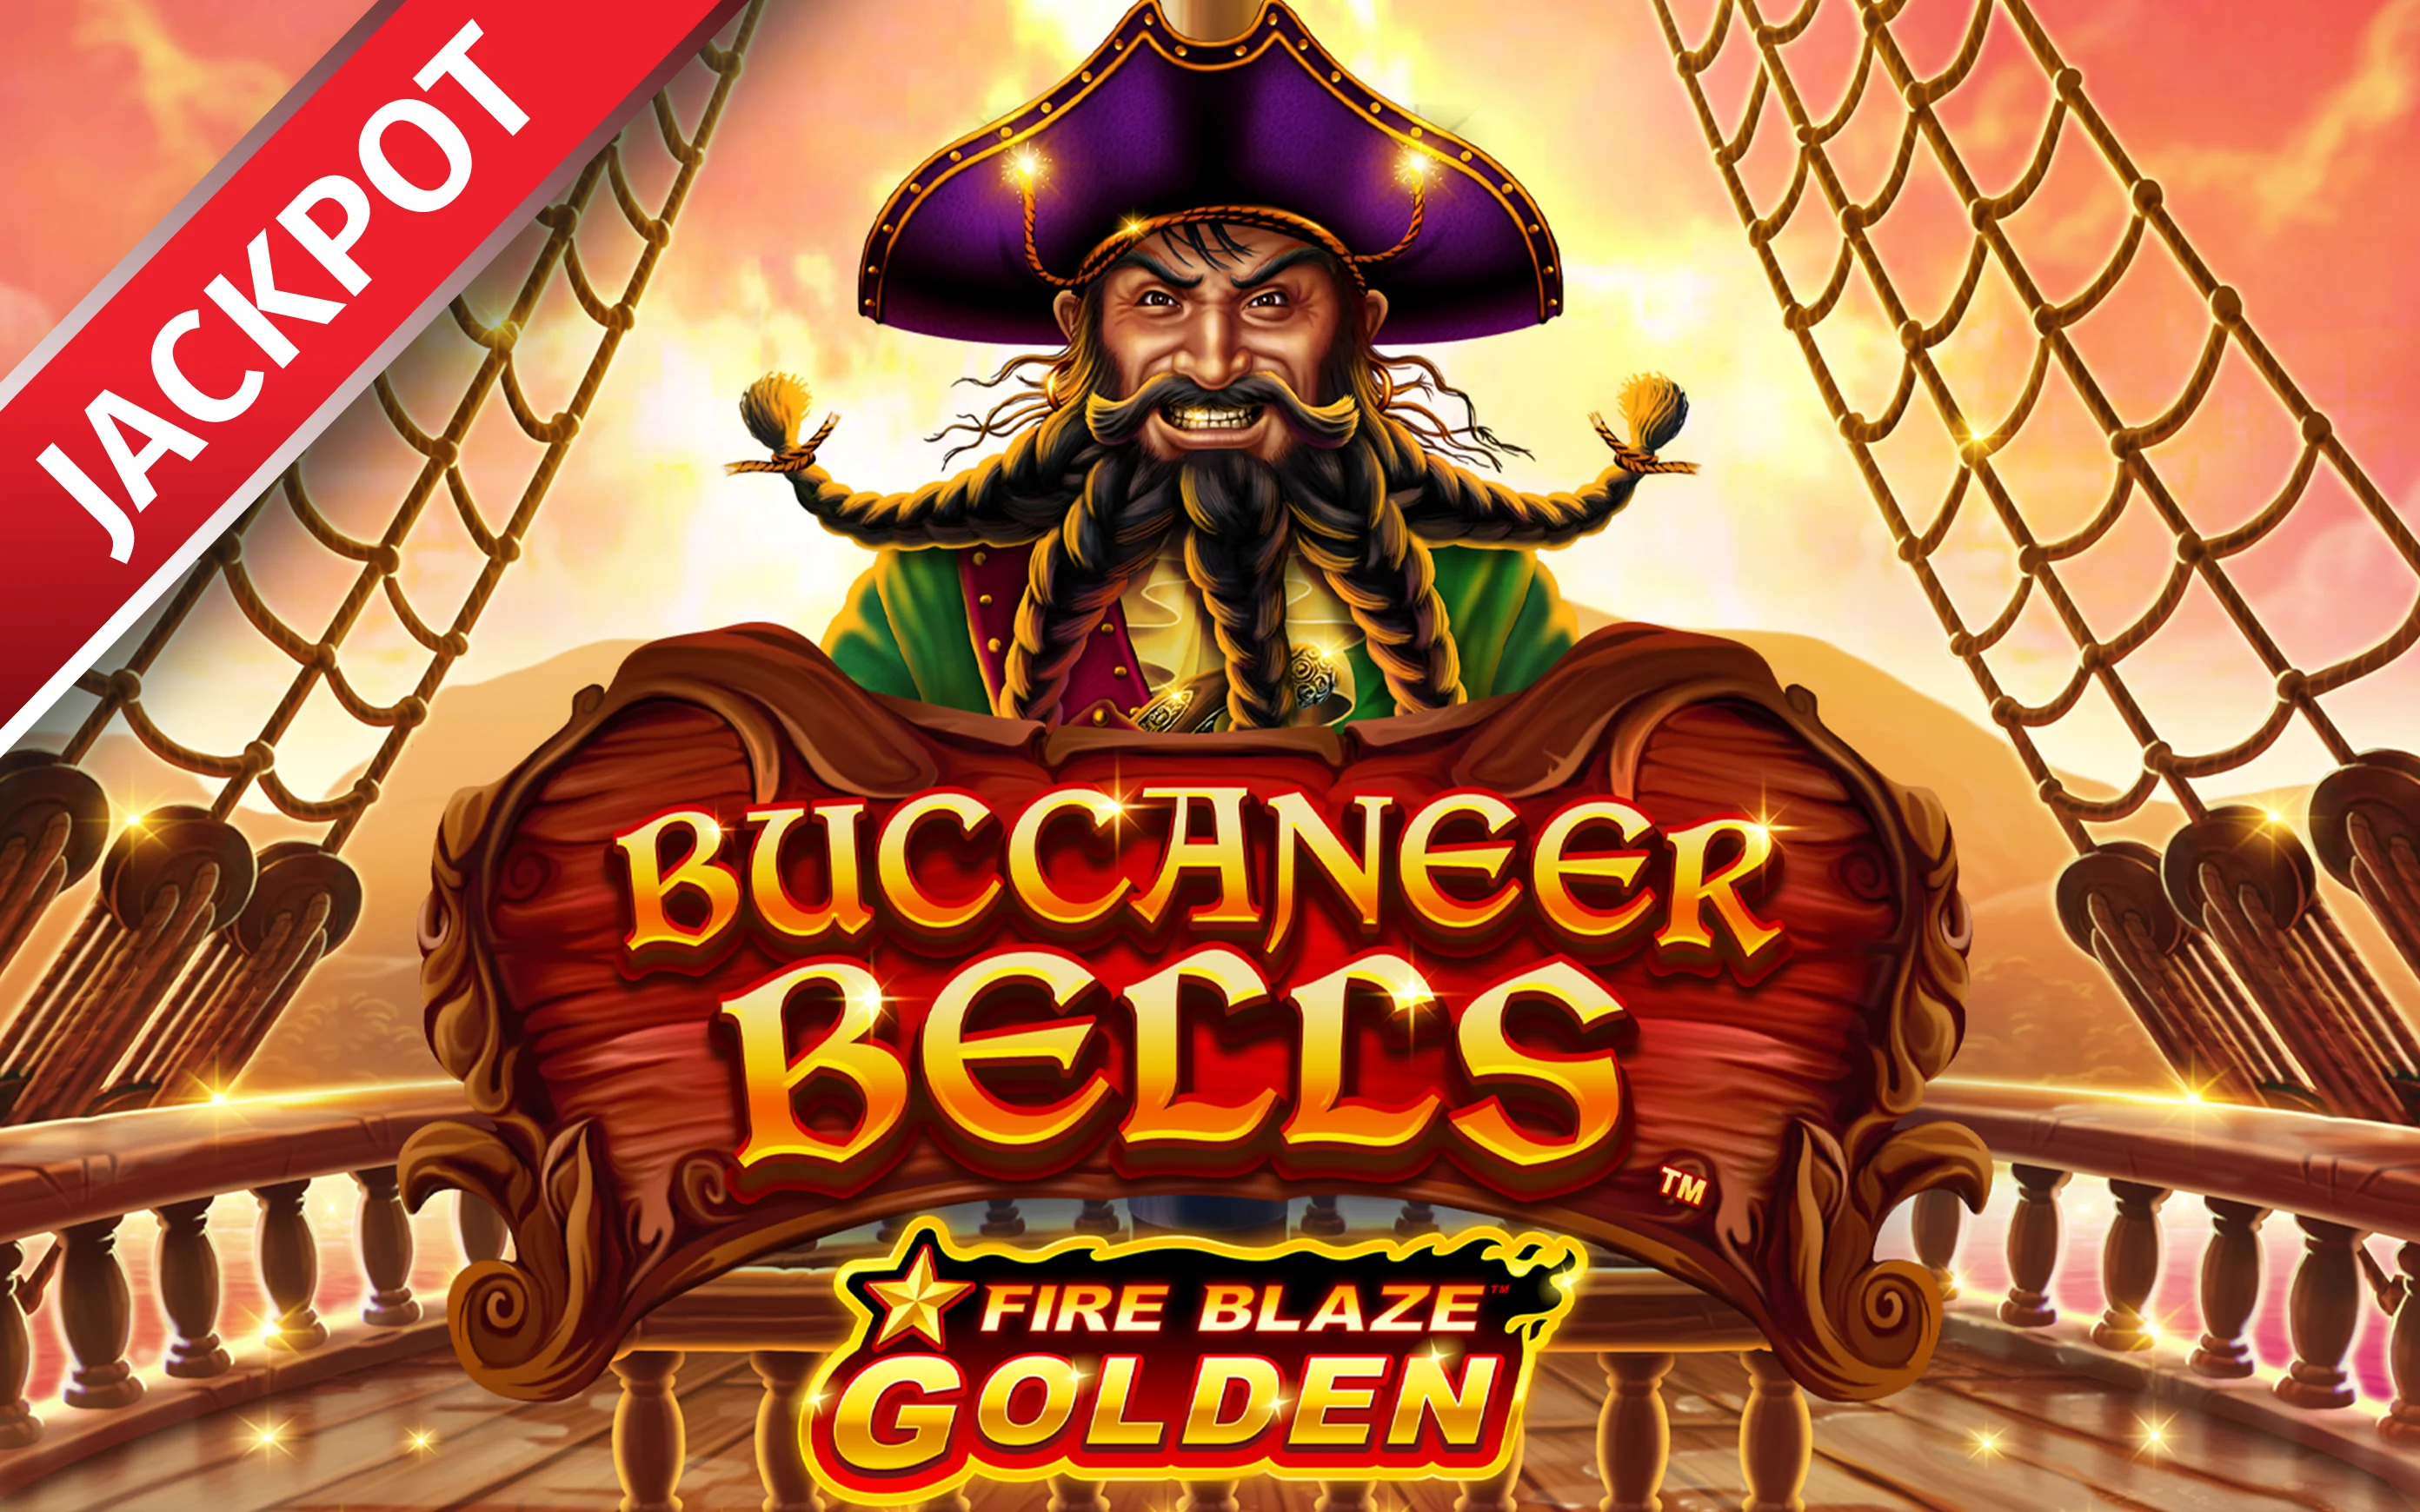 Грайте у Fire Blaze Golden Buccaneer Bells в онлайн-казино Starcasino.be